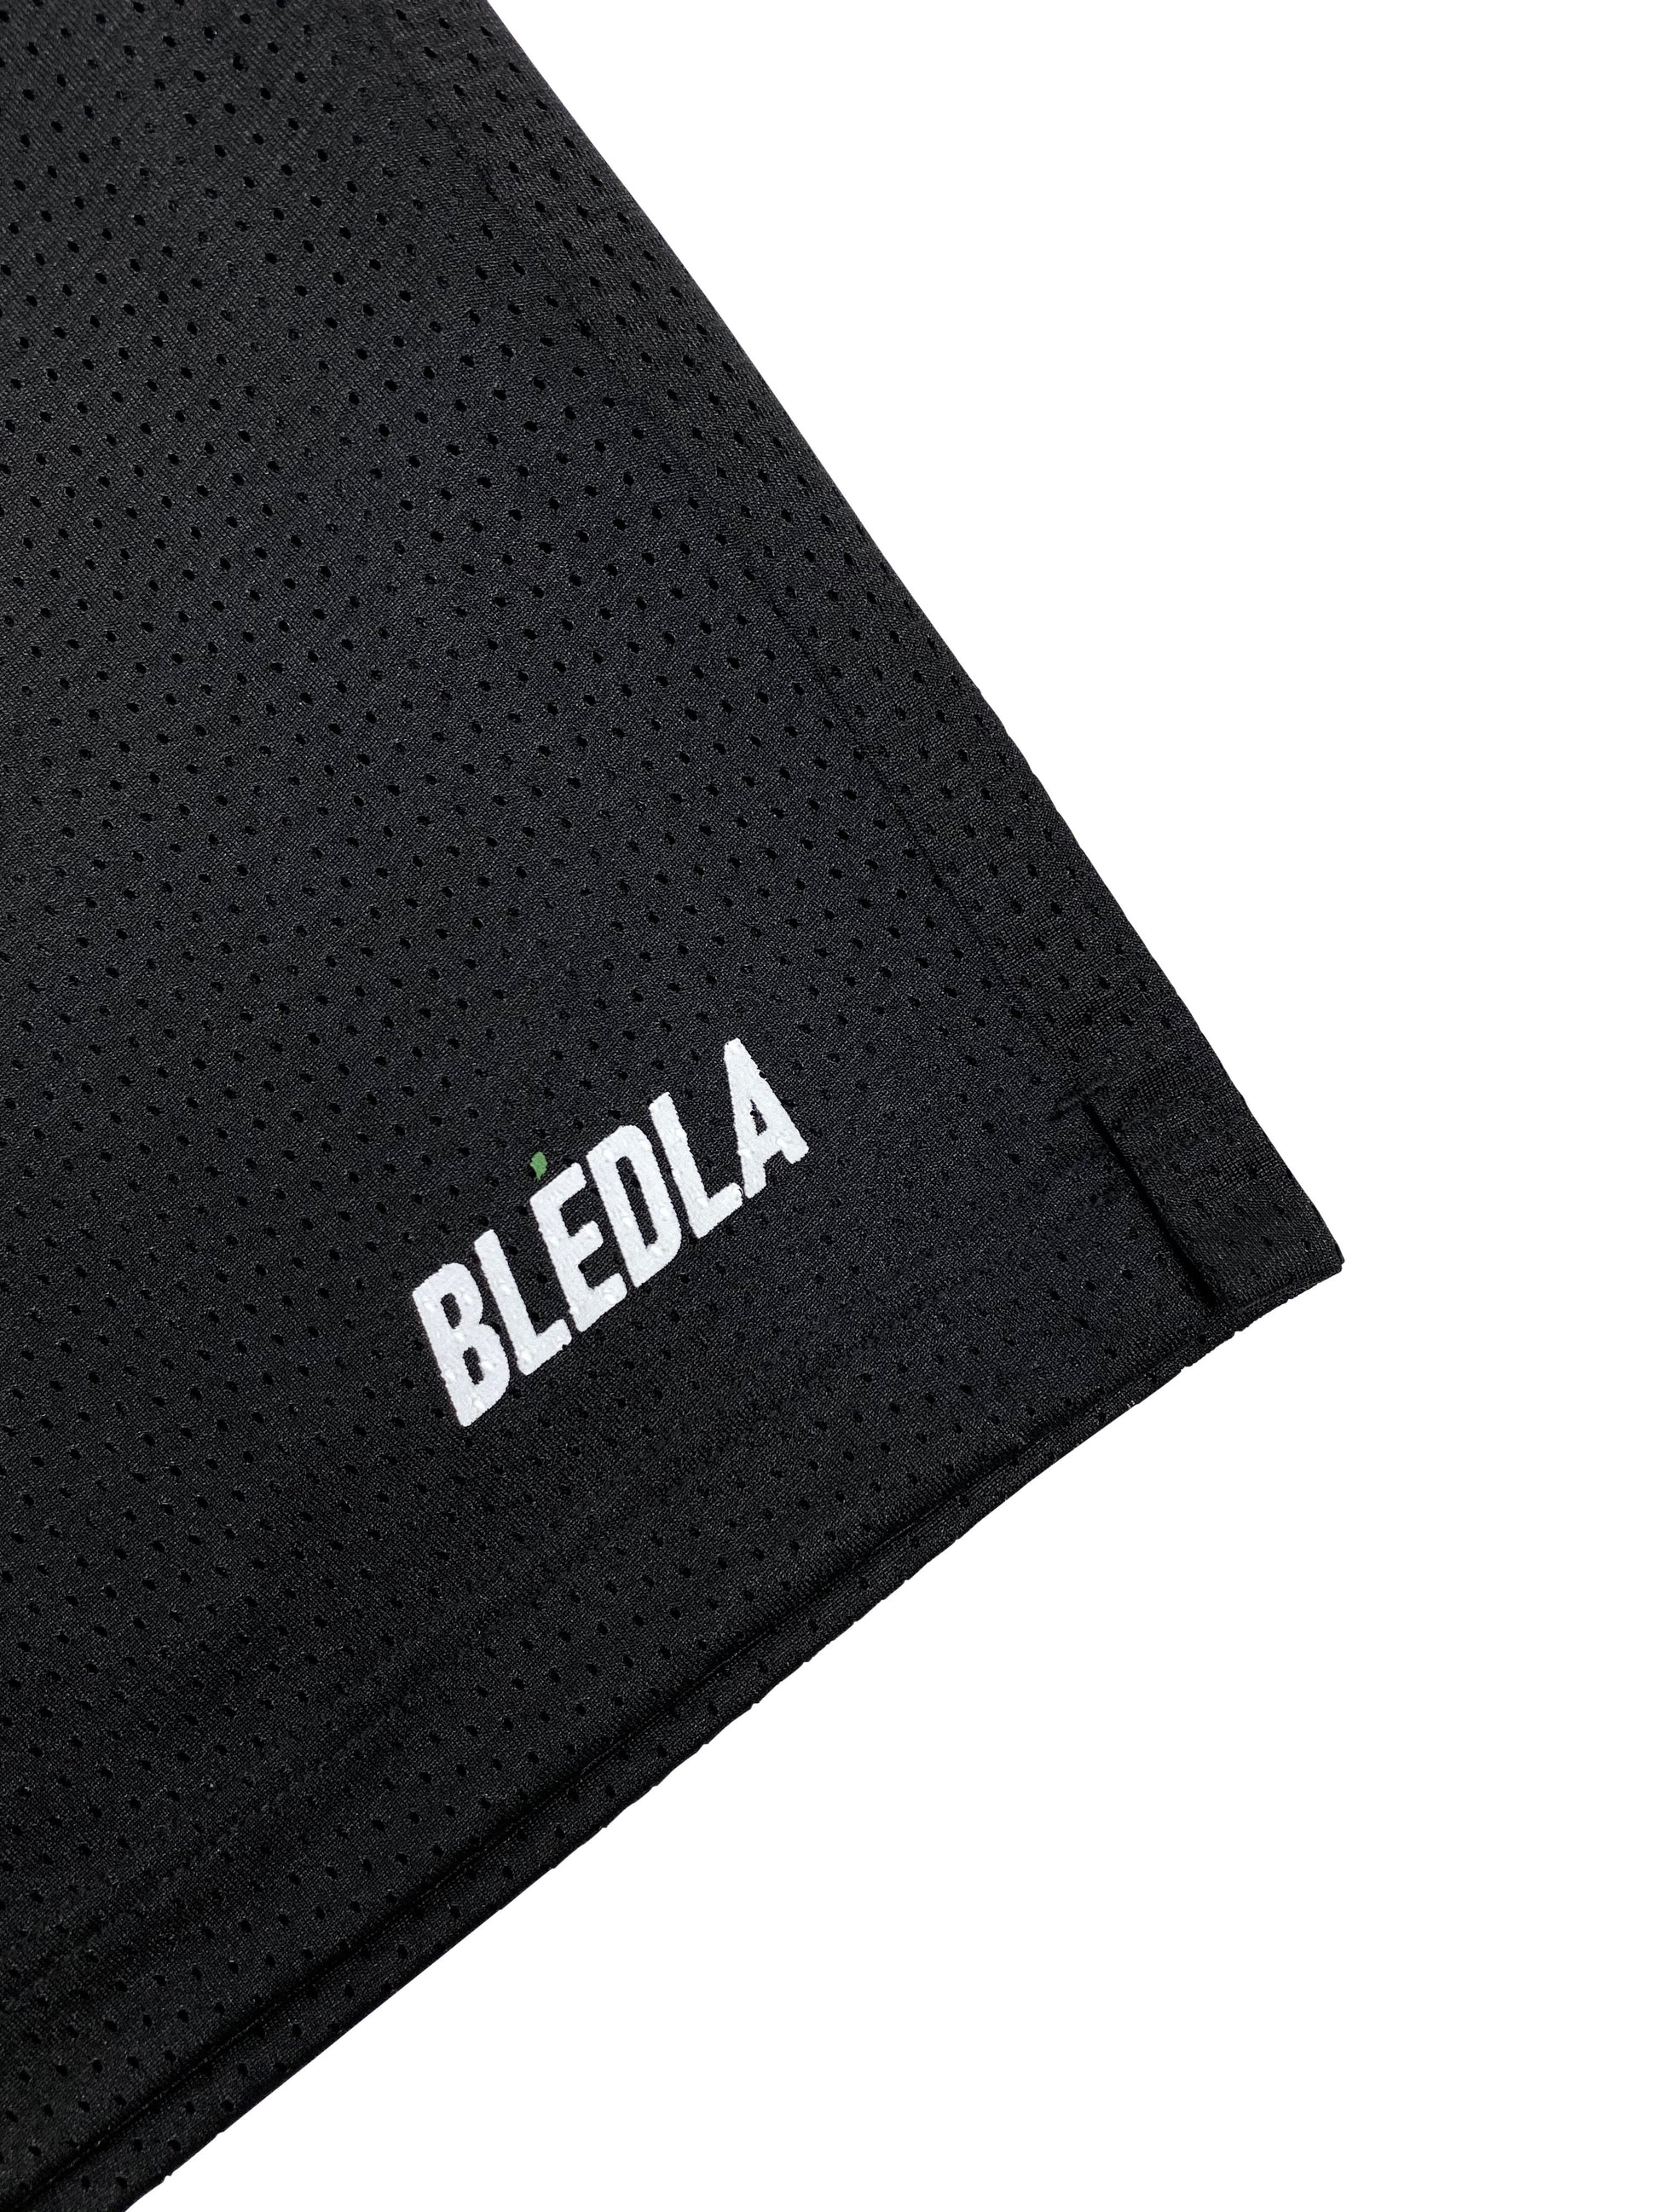 Bledla Reversible Mesh Shorts Black